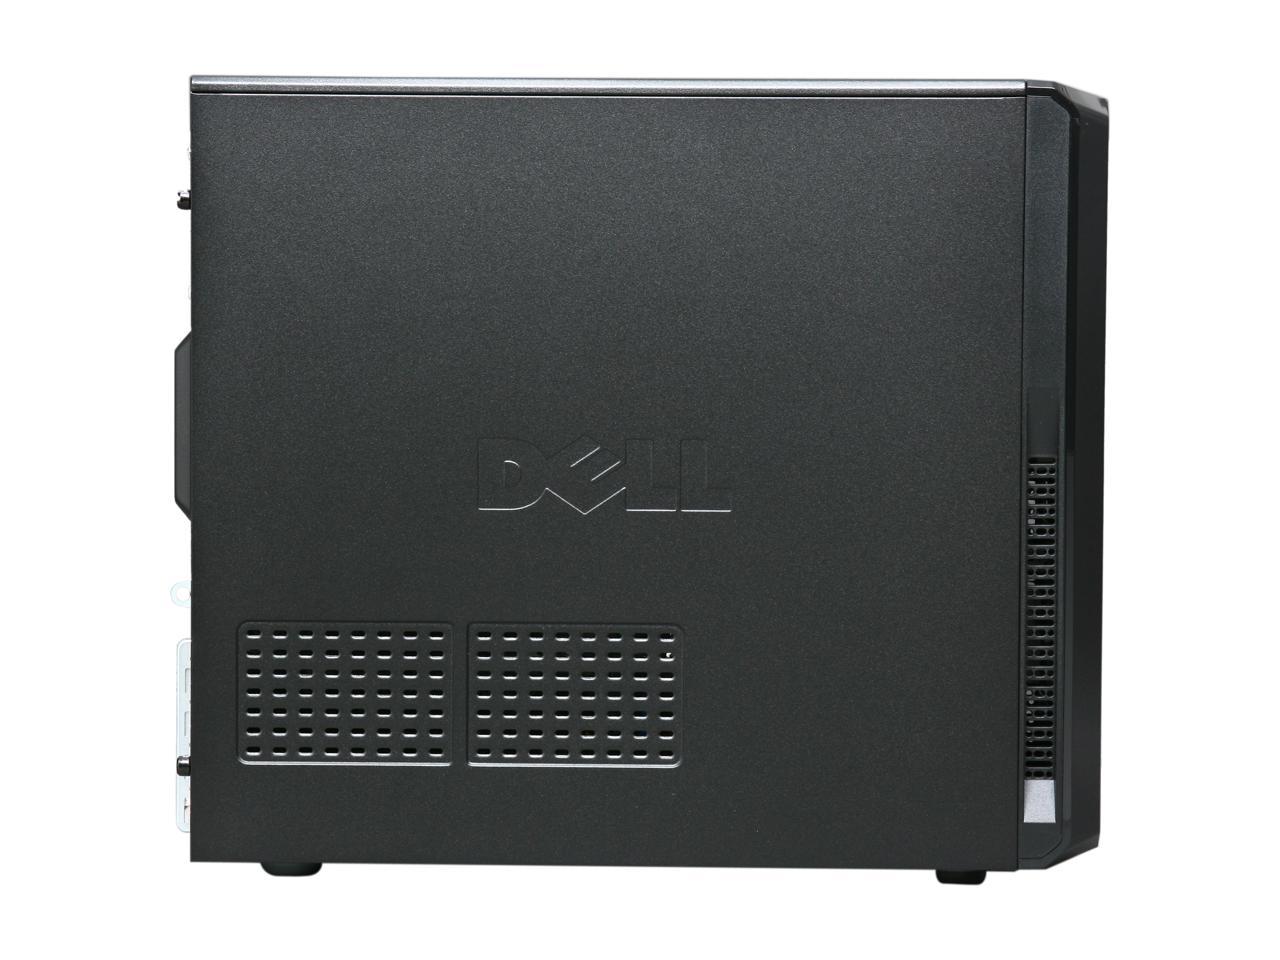 DELL Desktop PC Vostro 230 MT(468-5909) Core 2 Duo E7500 (2.93GHz) 2GB